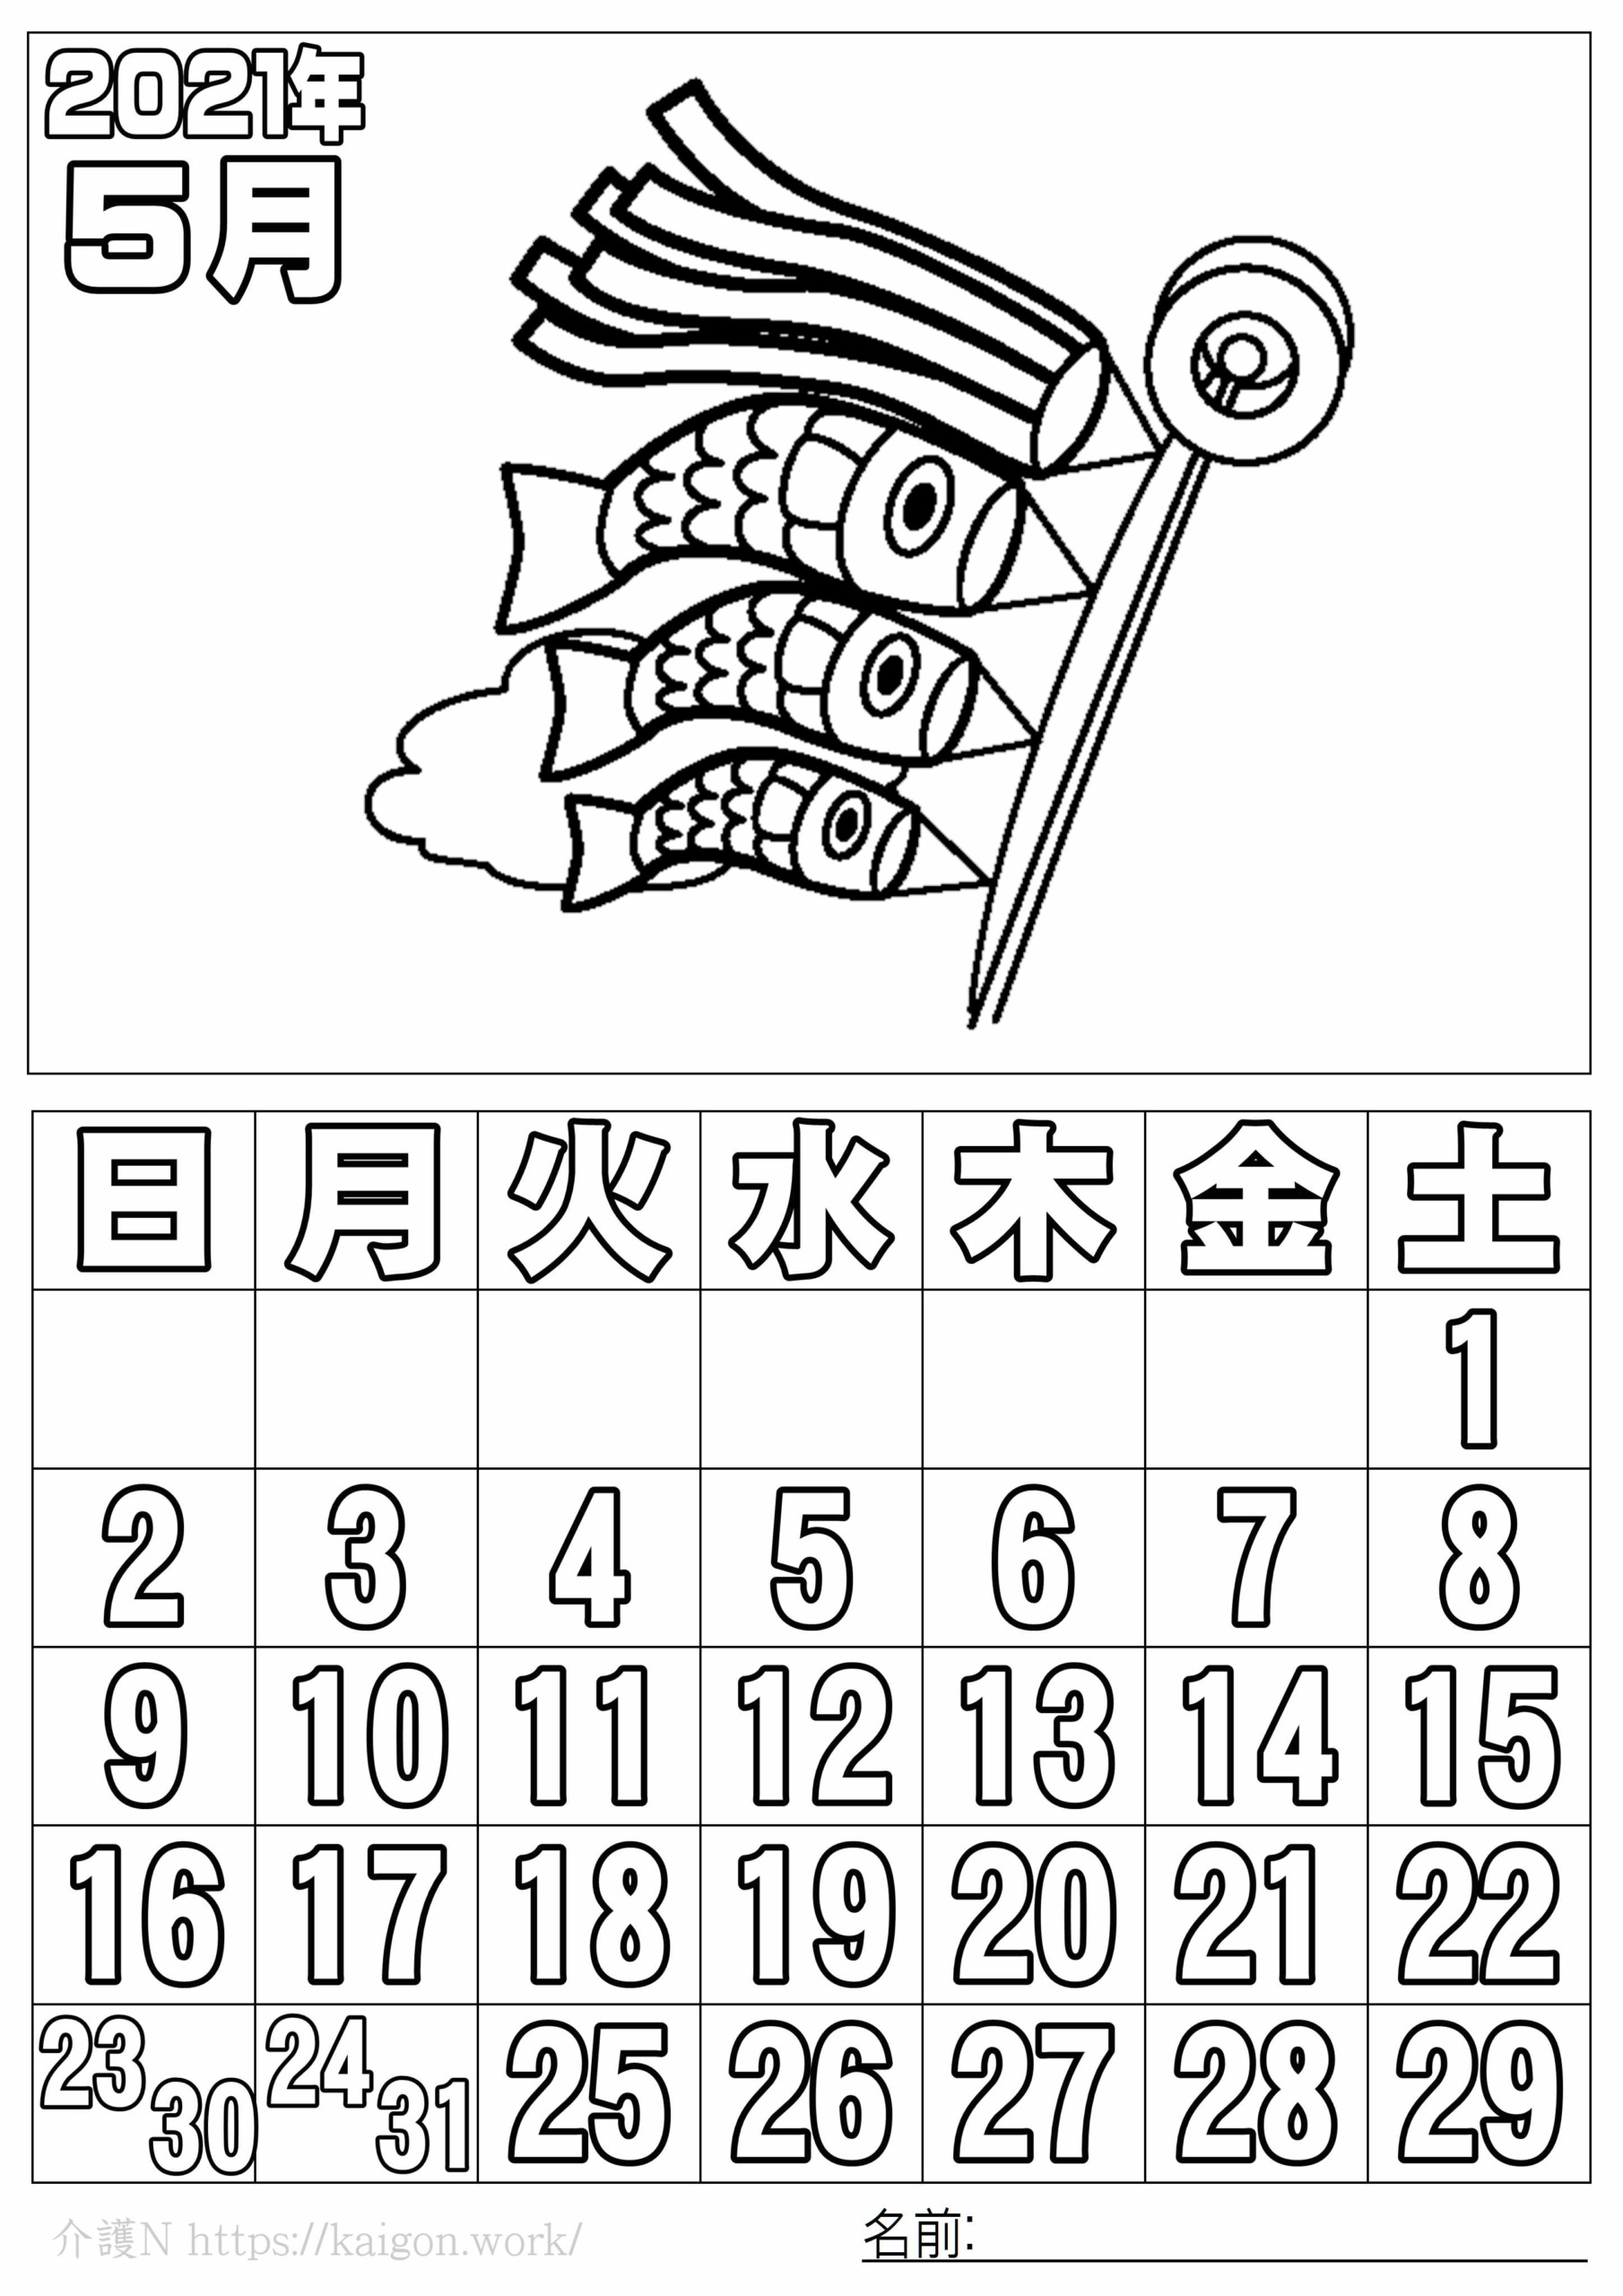 純度 税金 キャベツ 21 年 カレンダー 5 月 9you Jp